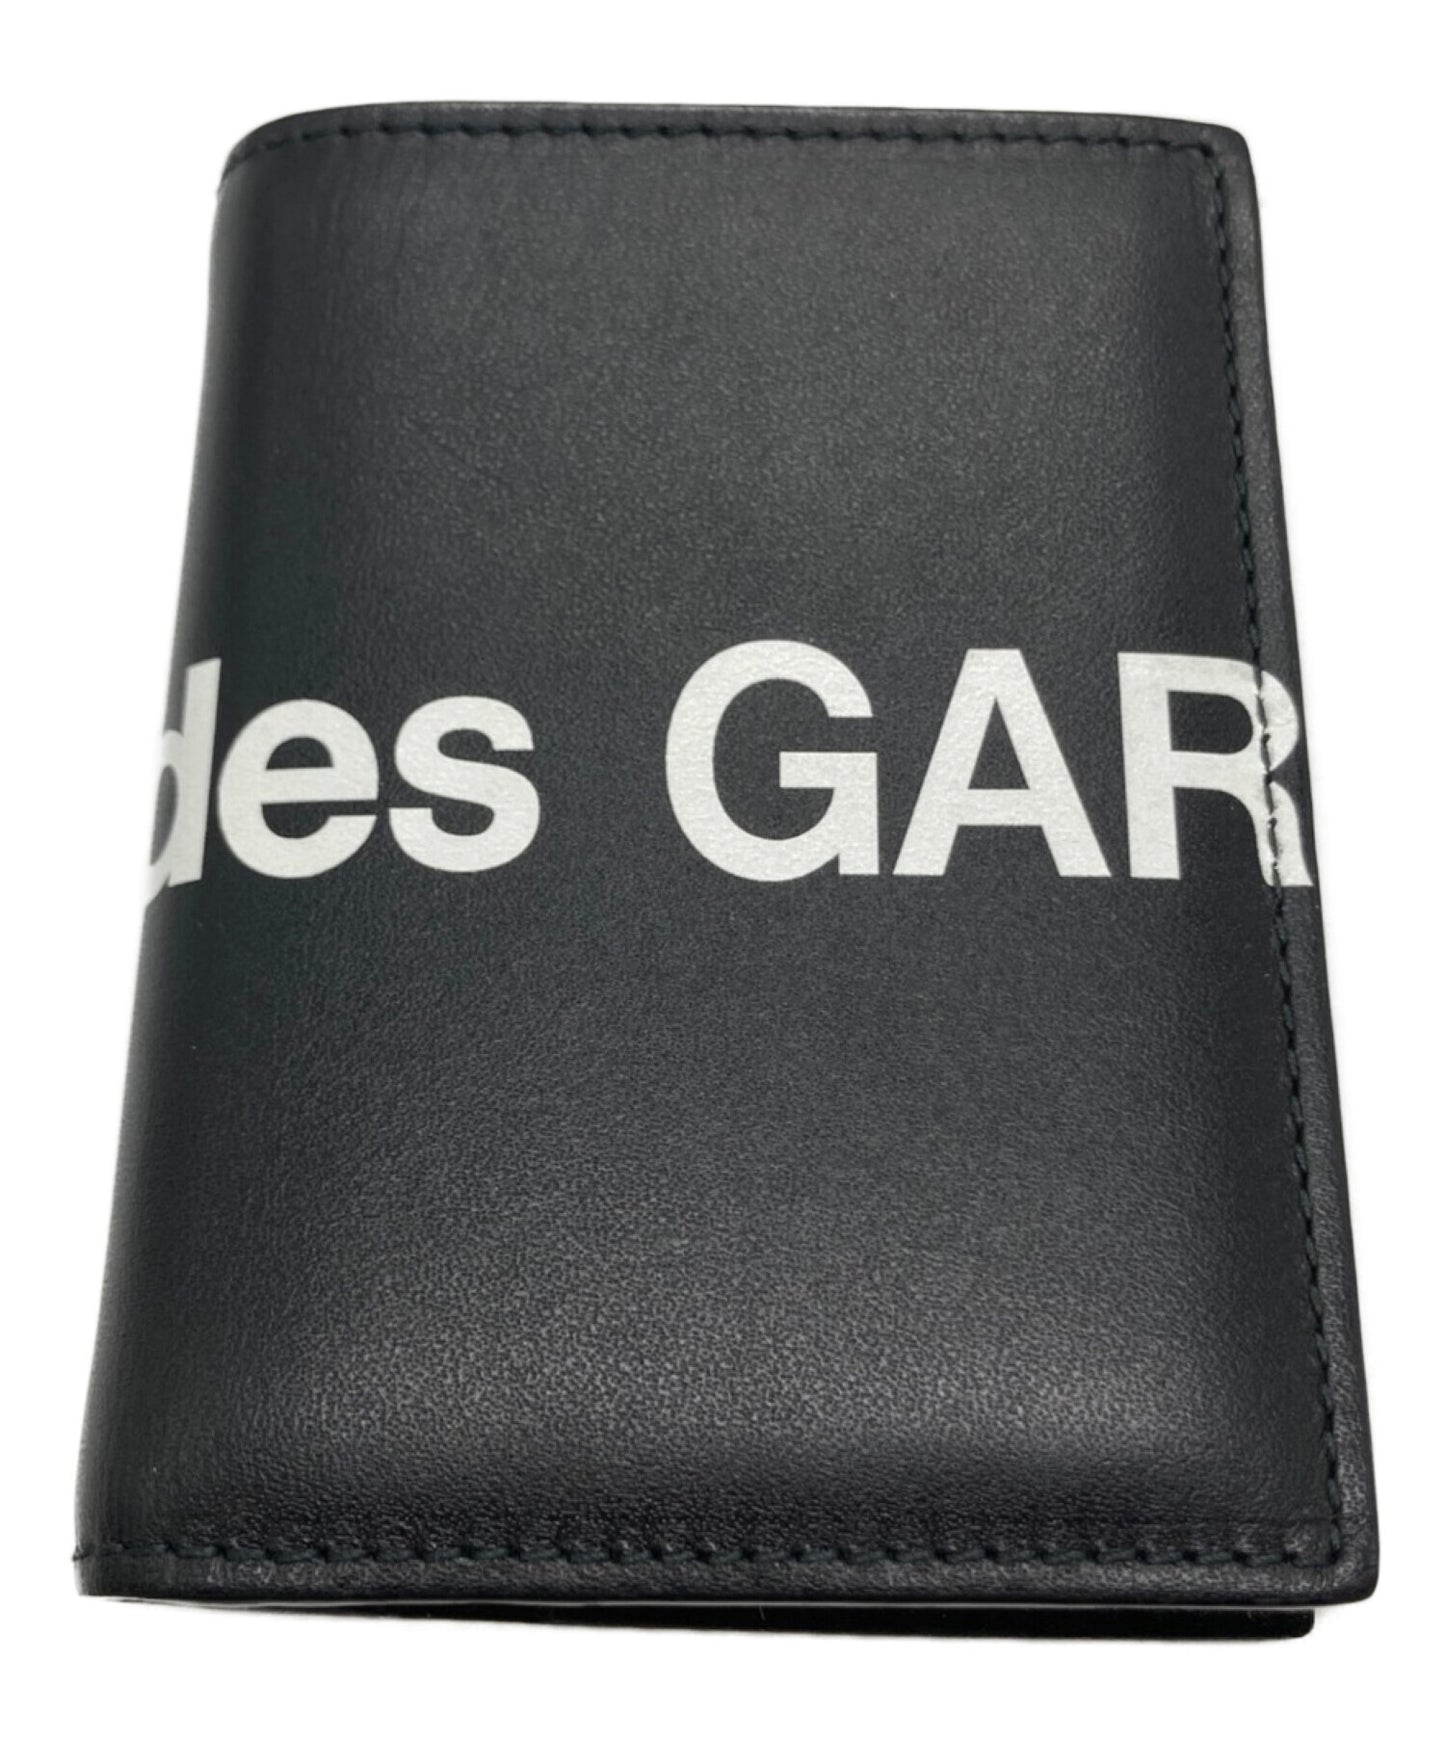 [Pre-owned] COMME des GARCONS HUGE LOGO WALLET Huge logo wallet SA0641HL